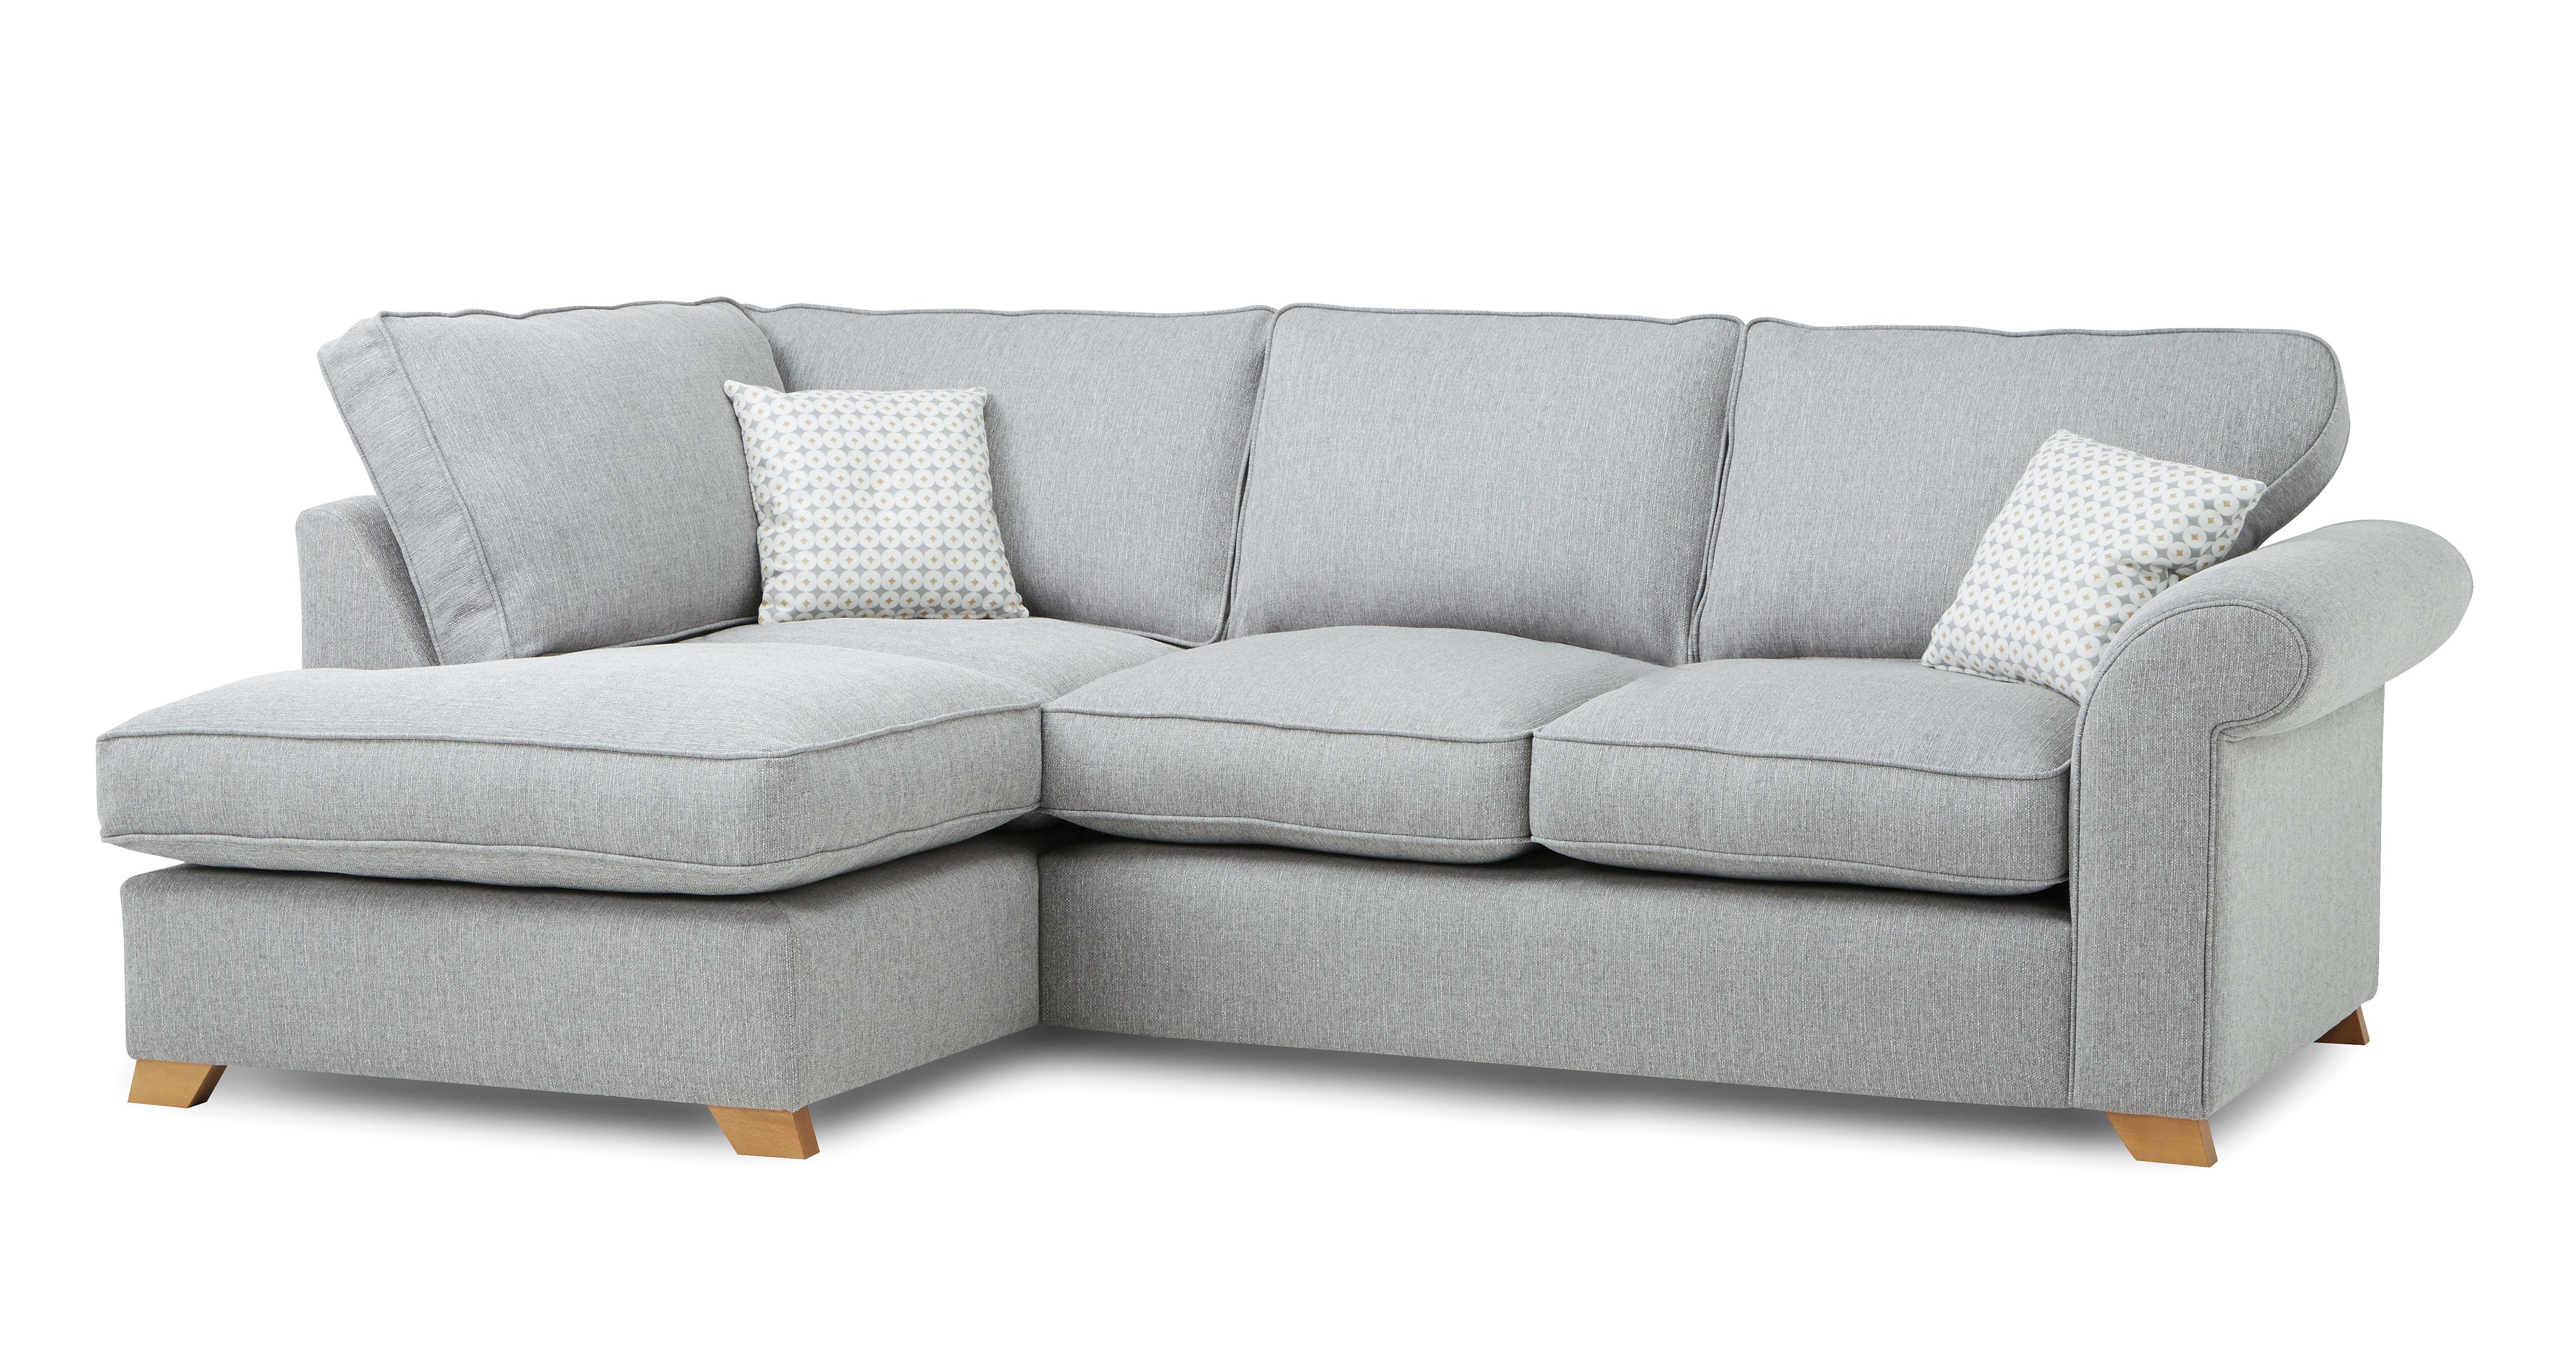 grey sofa beds uk